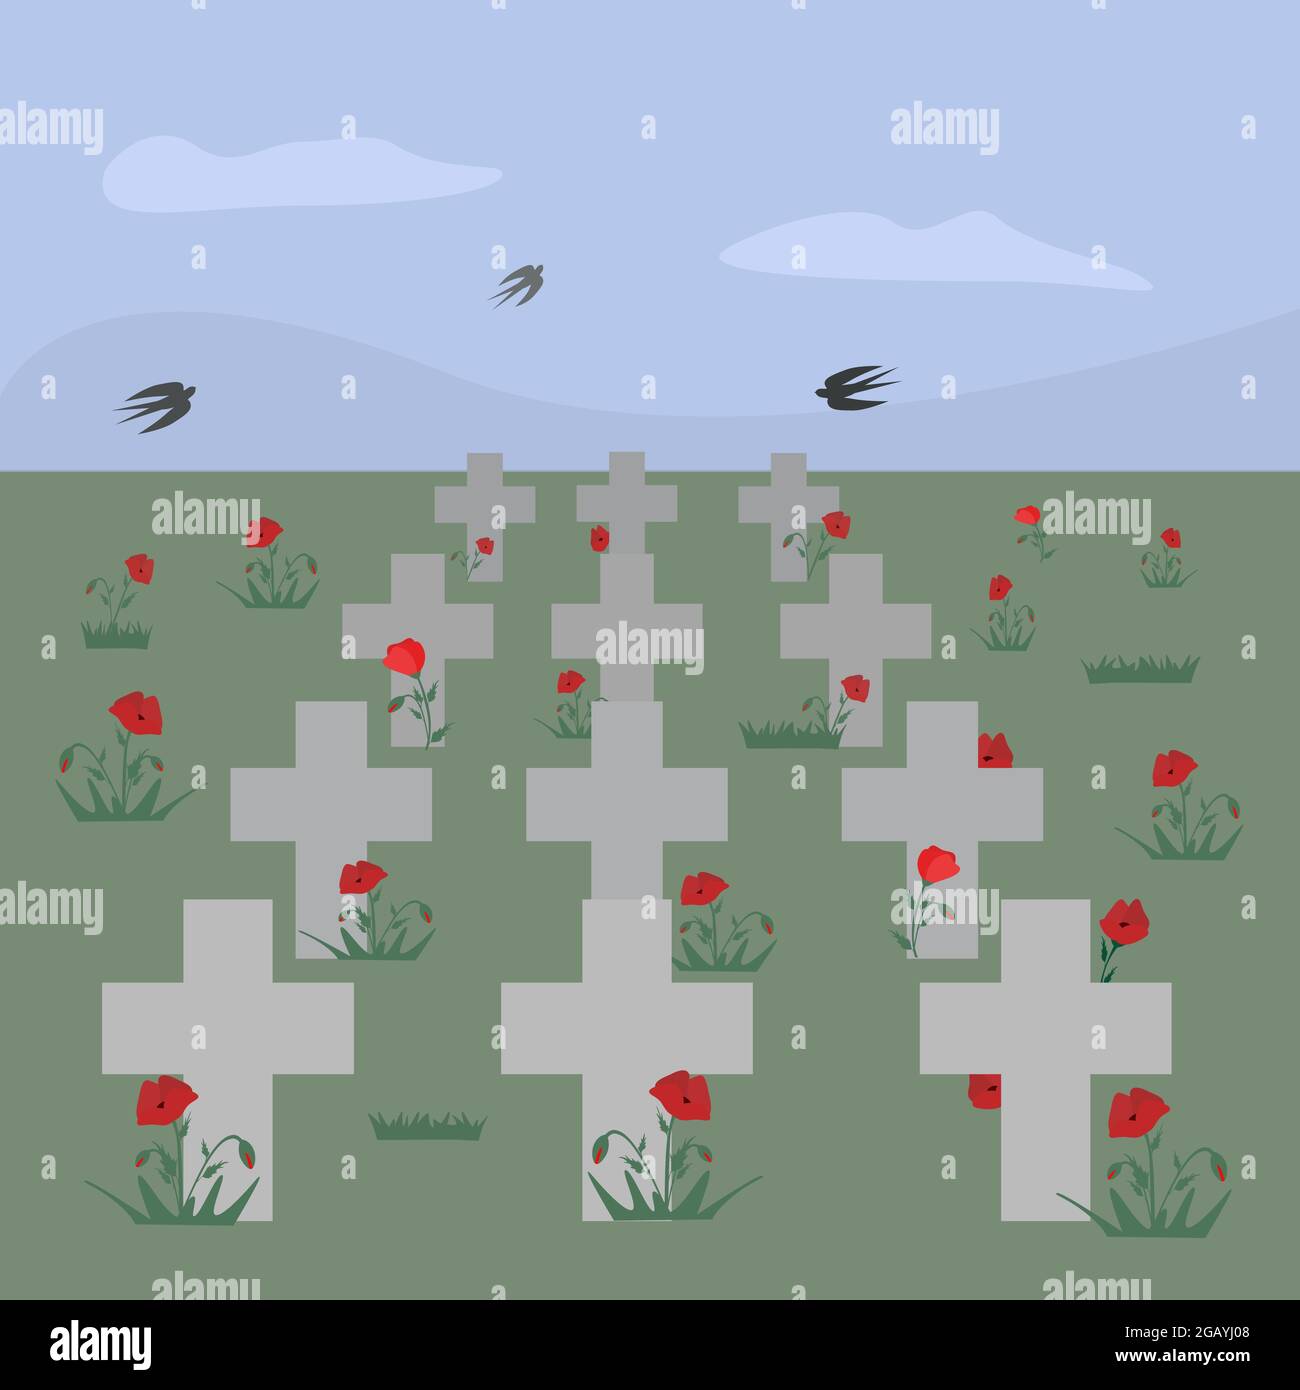 Friedhofskreuze mit Mohnblumen. Schwalben fliegen am Himmel. Poppy Field Vektorgrafik für Remembrance Day, Anzac Day Stock Vektor